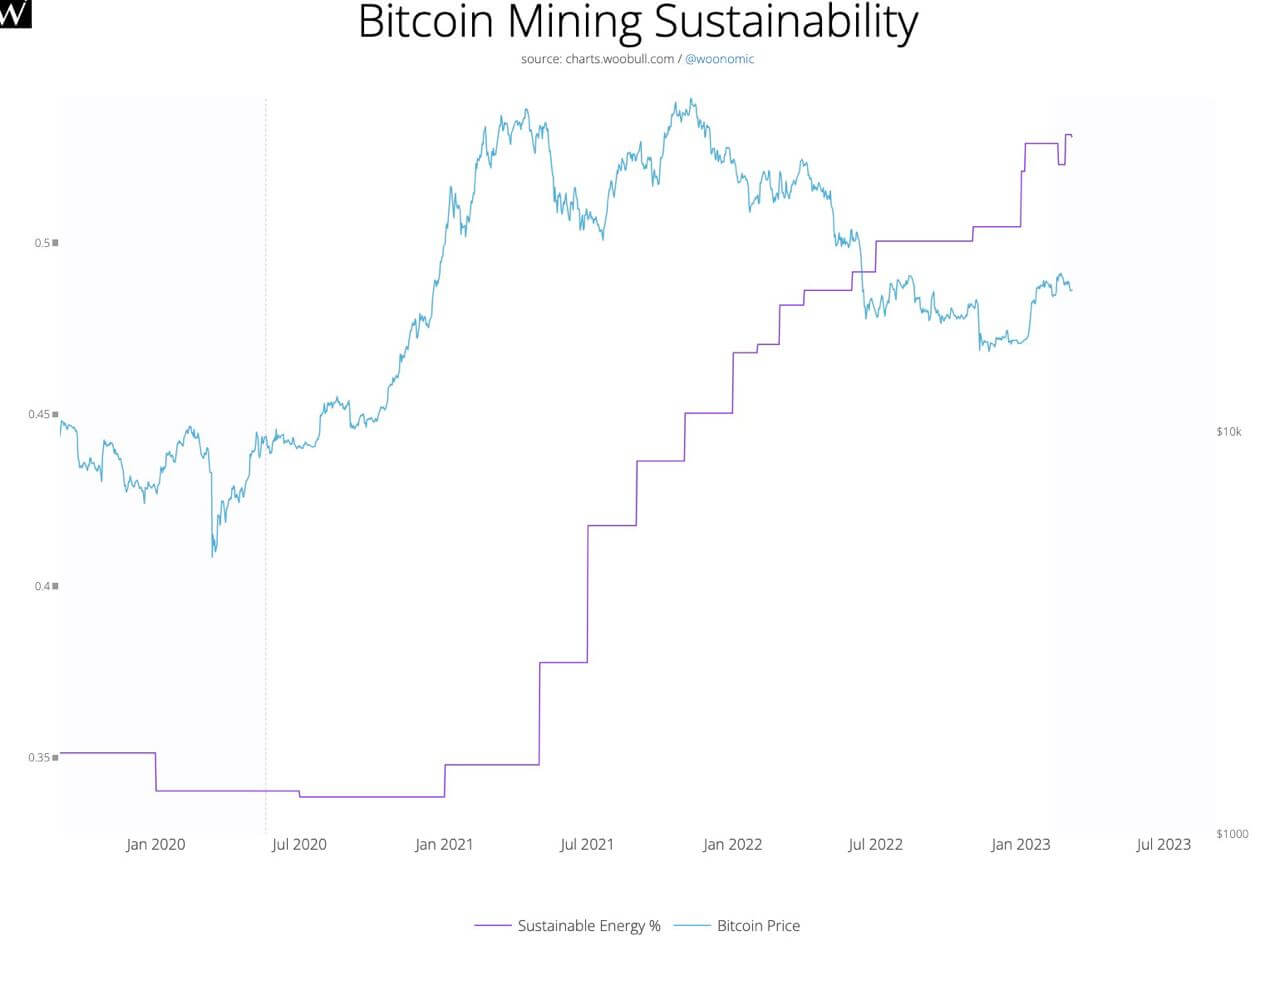 BTC mining sustainability